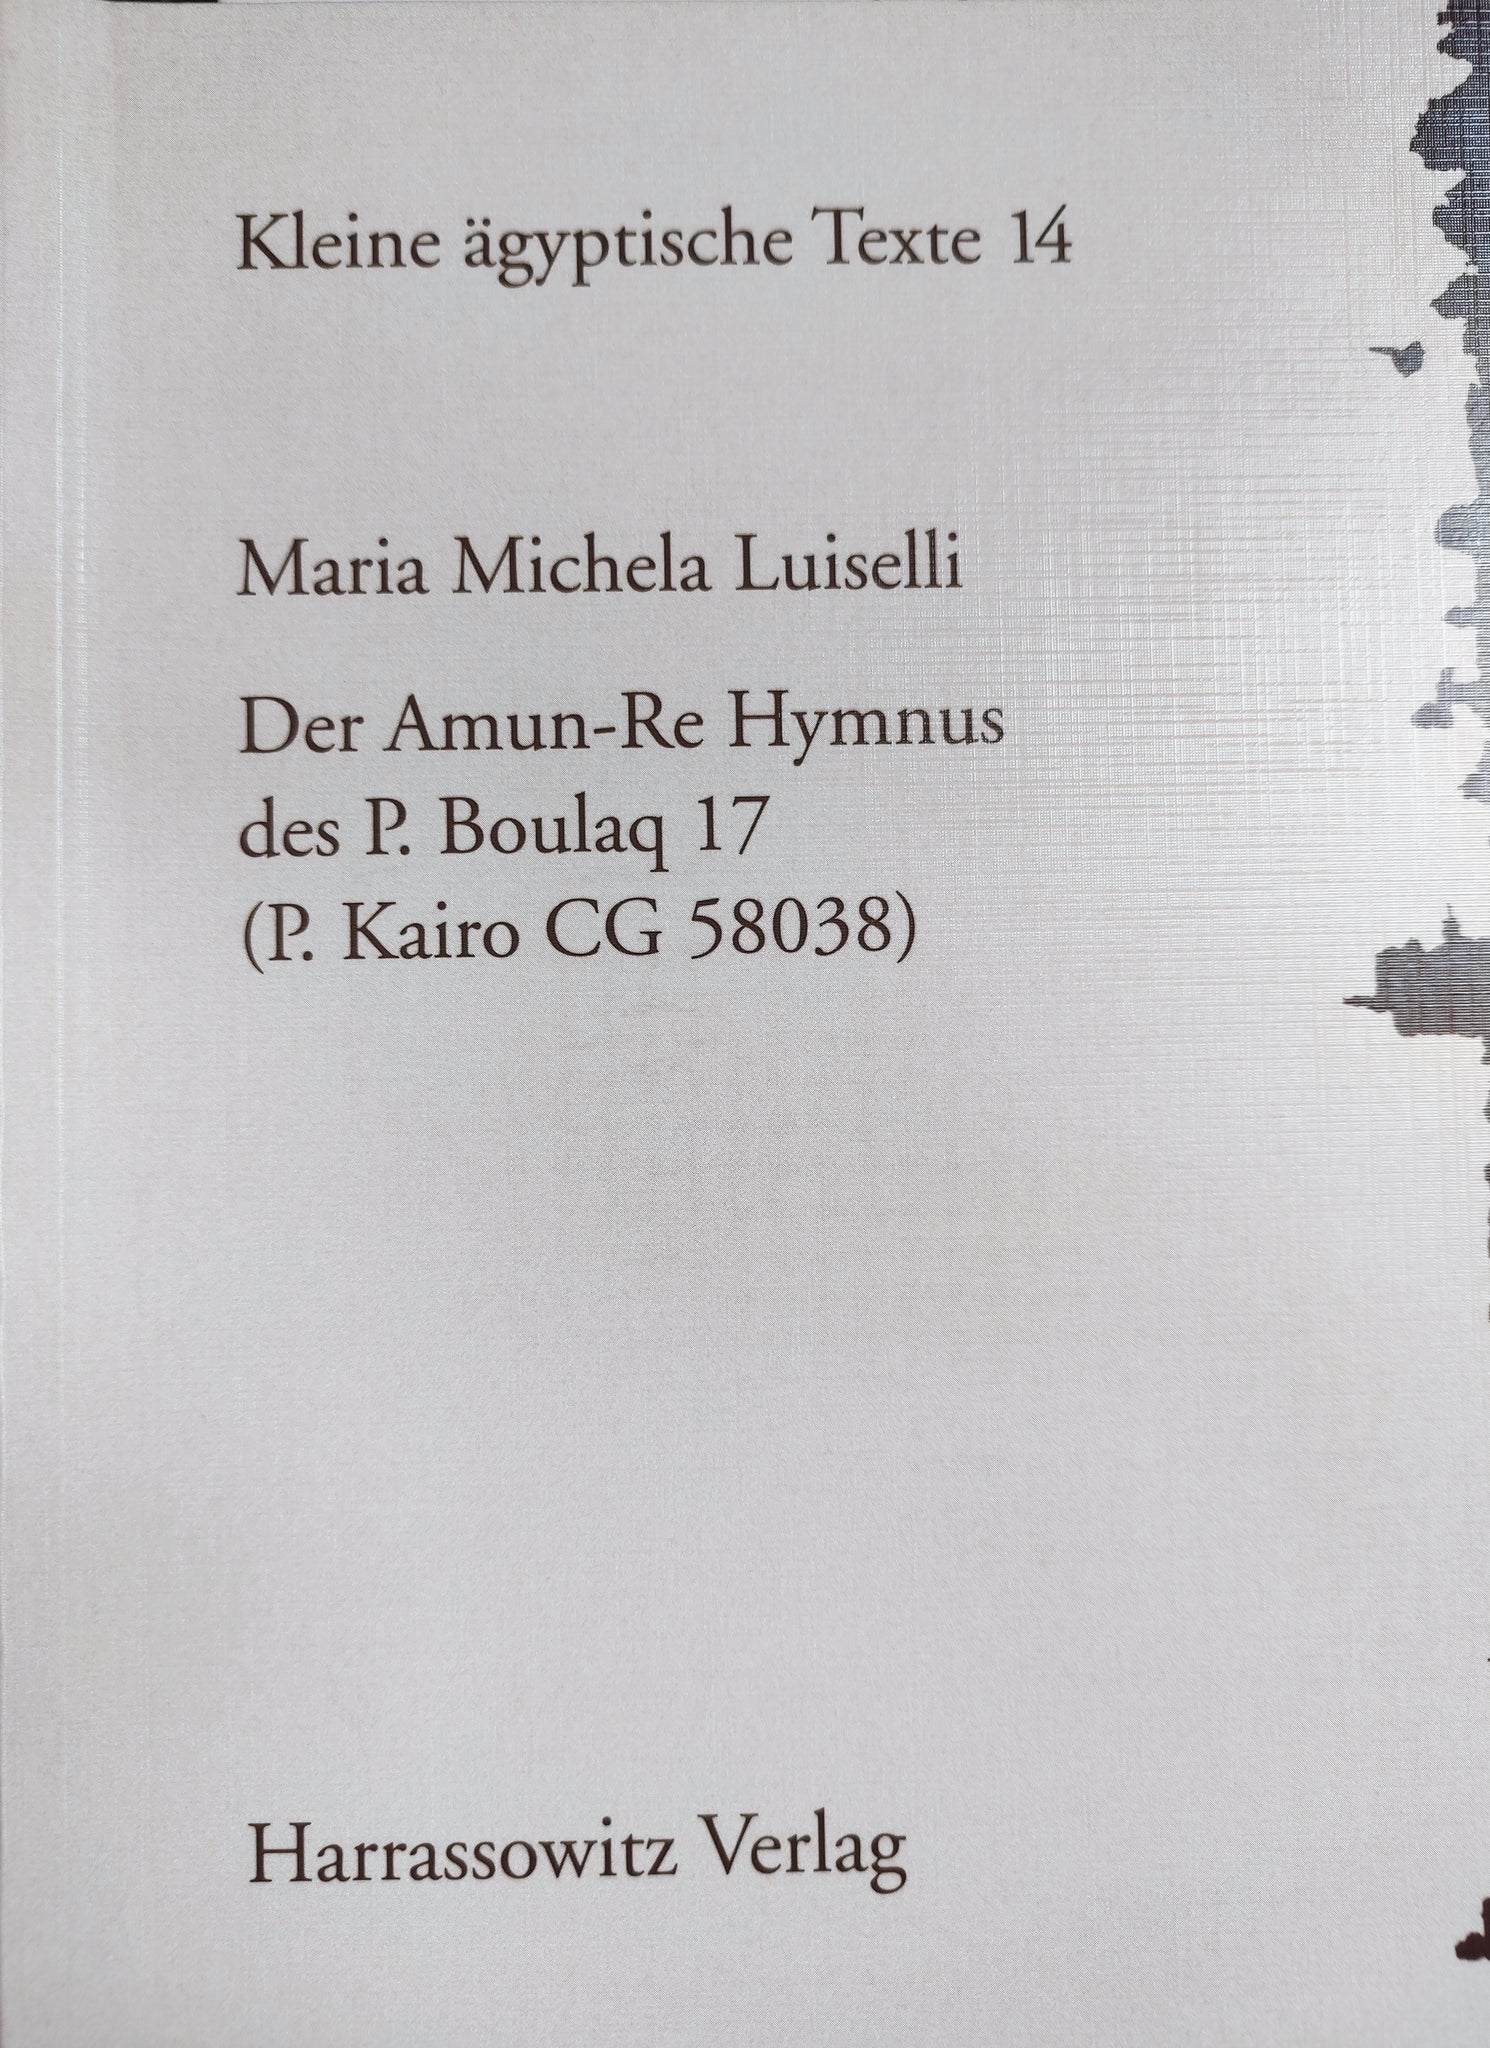 Der Amun-Re Hymnus des P. Boulaq 17 (P. Kairo CG 58038).